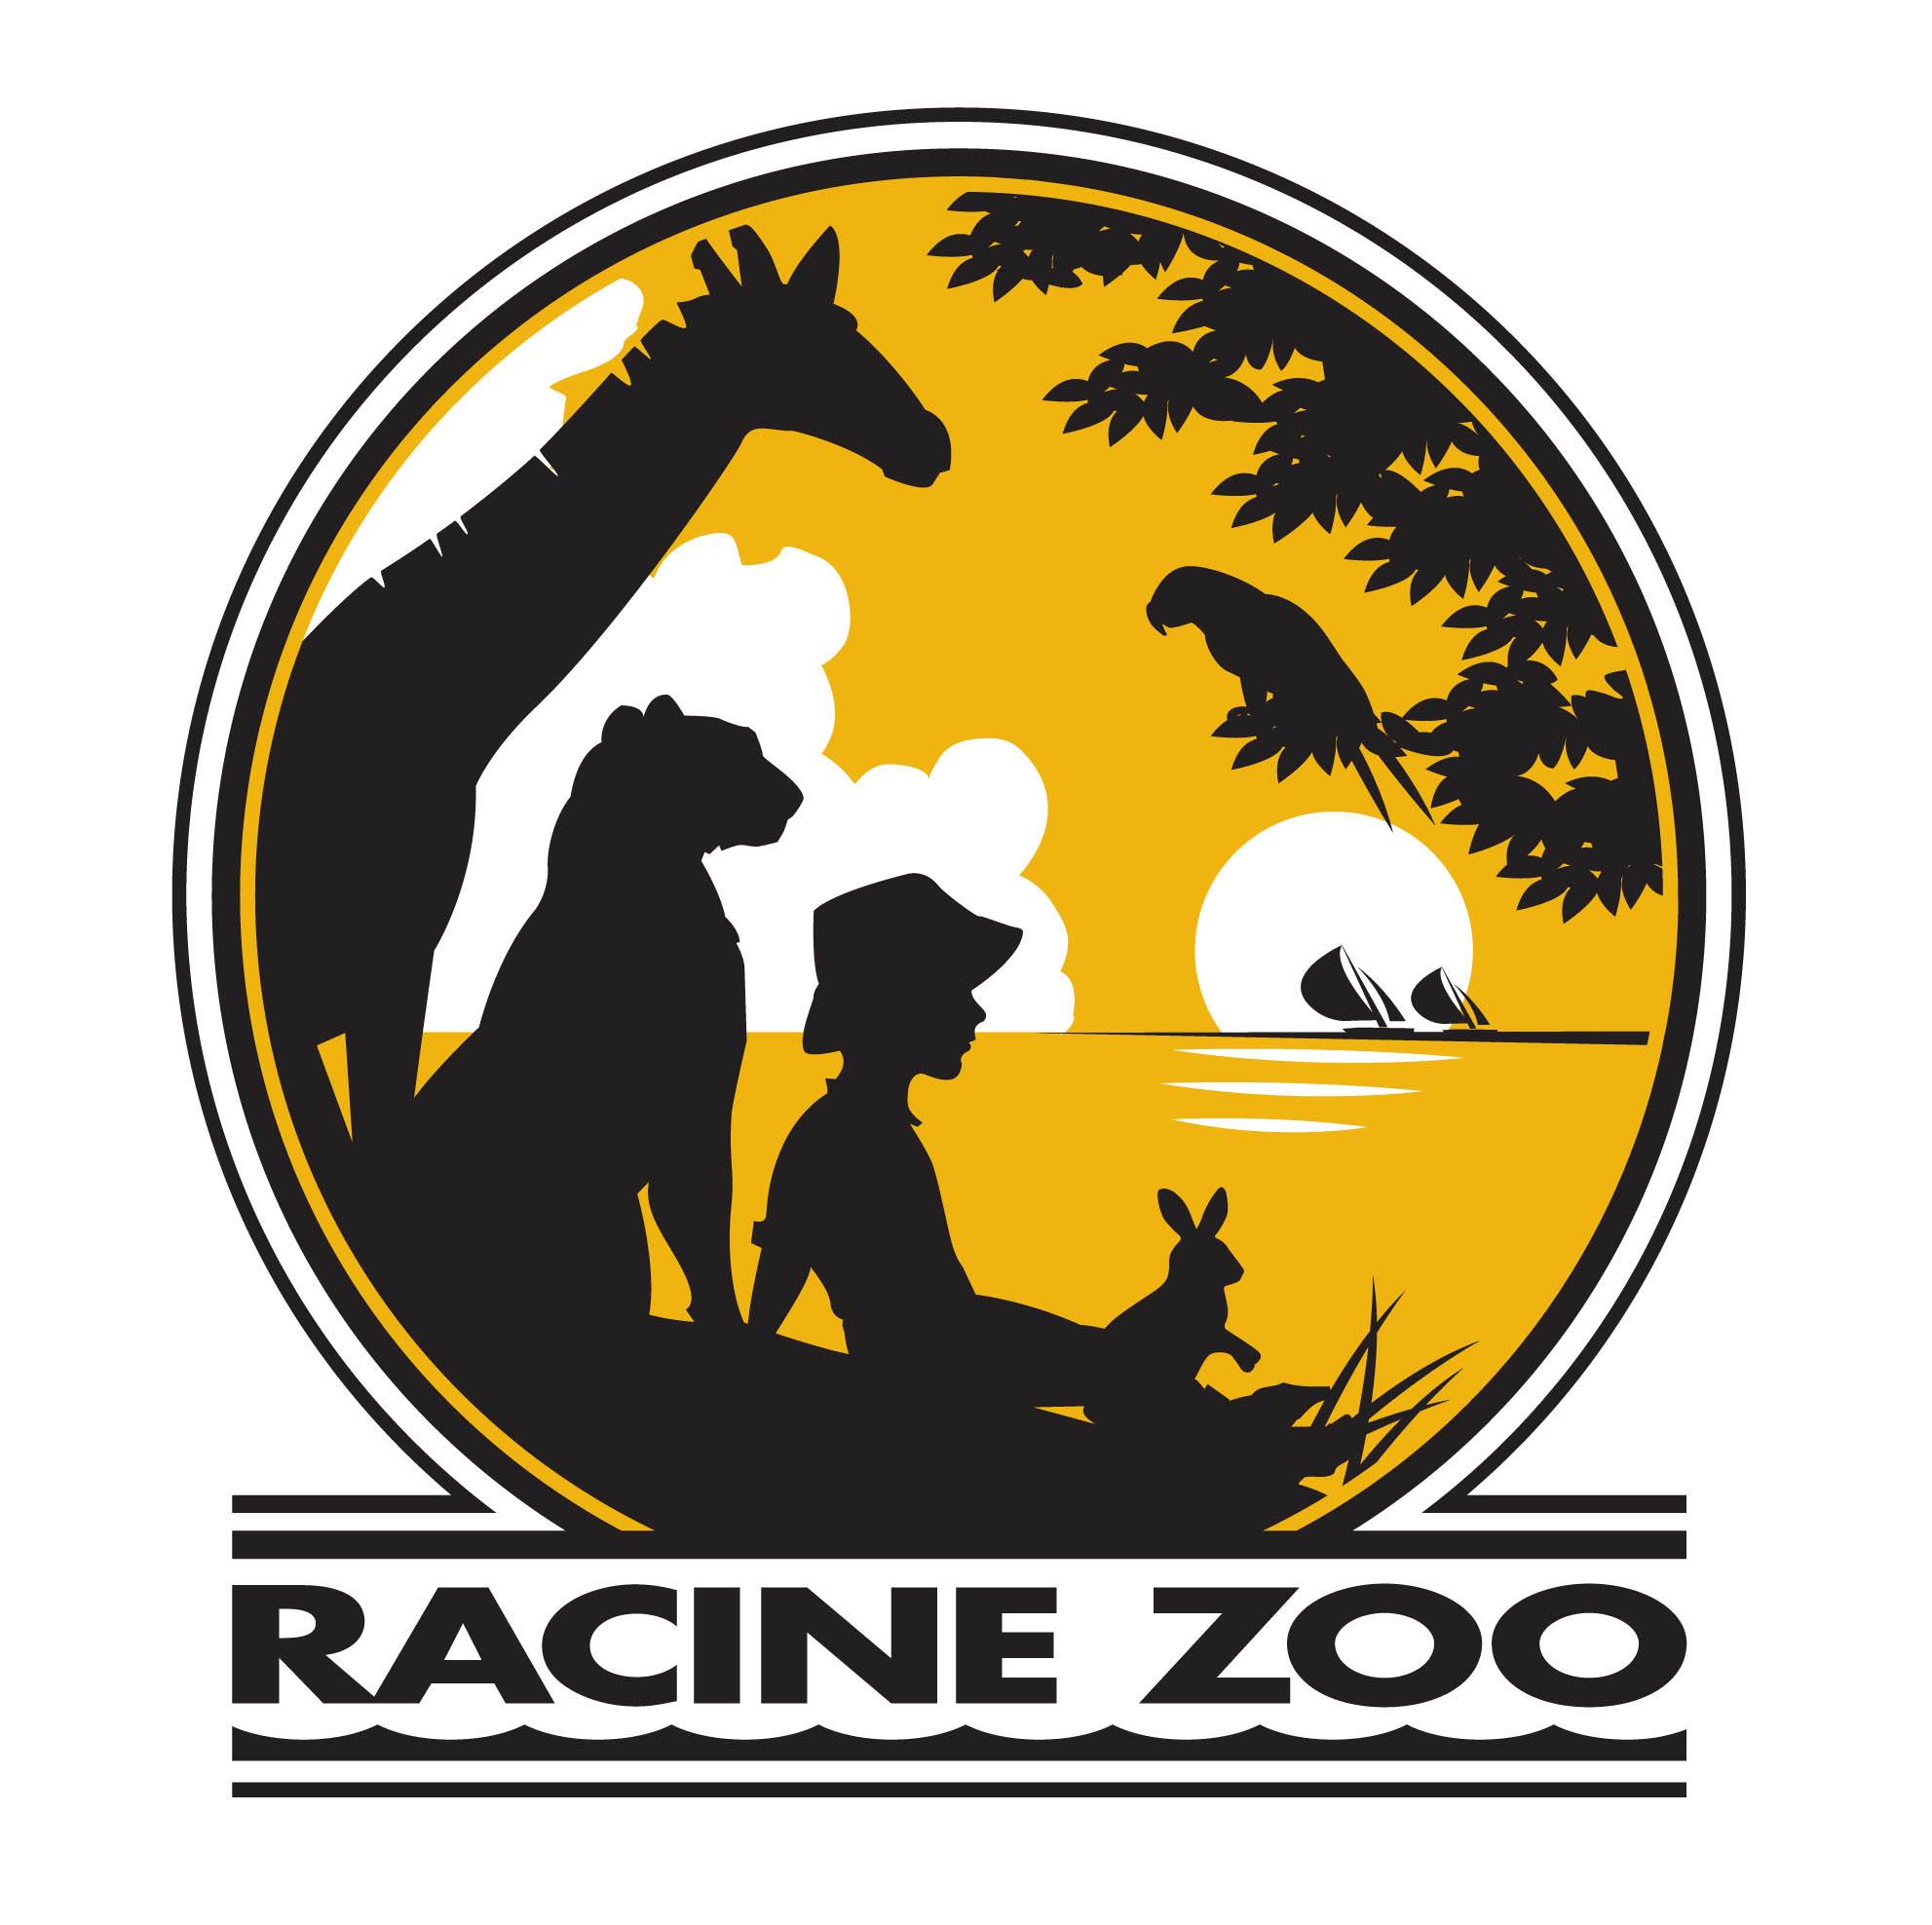 Business logo of Racine Zoo